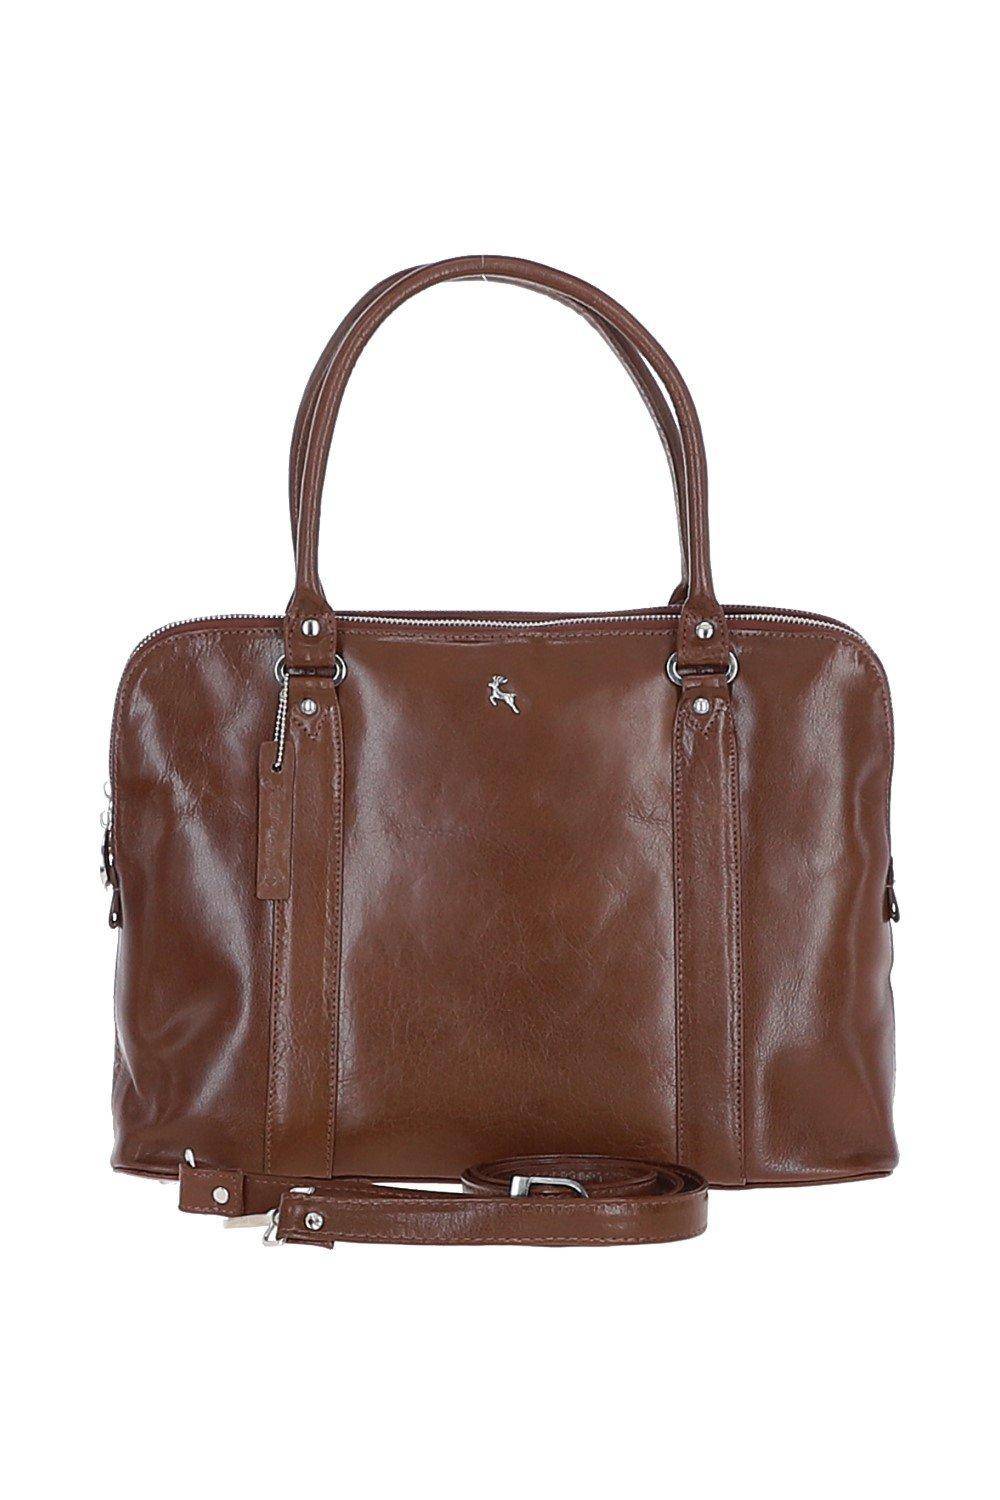 Большая трехсекционная кожаная сумка растительного дубления Ashwood Leather, коричневый сумка хобо lak 018901 повседневная натуральная кожа вмещает а4 внутренний карман регулируемый ремень черный